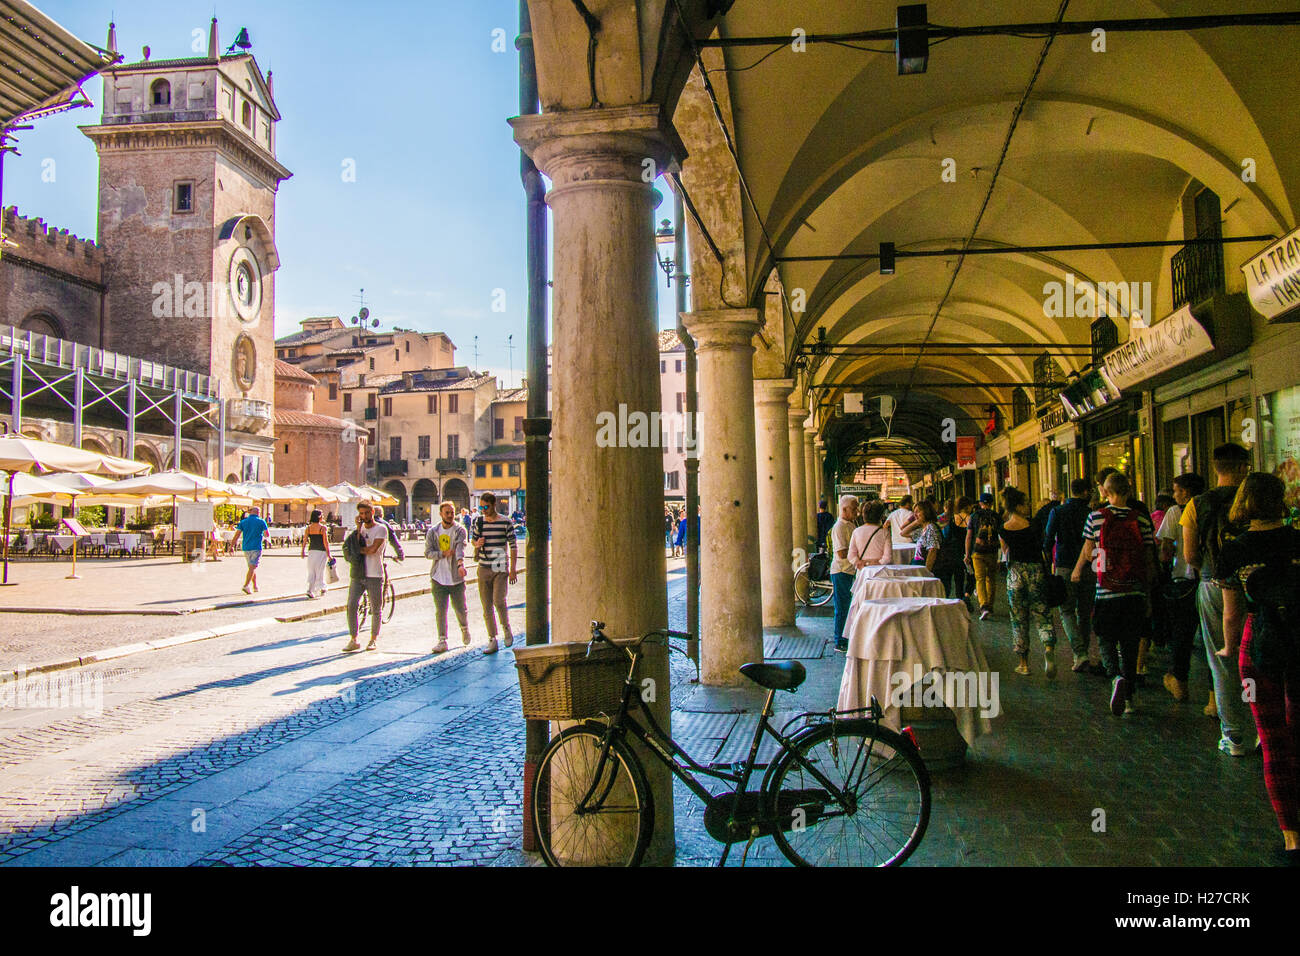 Piazza delle Erbe, Mantua (Mantova), Lombardy, Italy Stock Photo